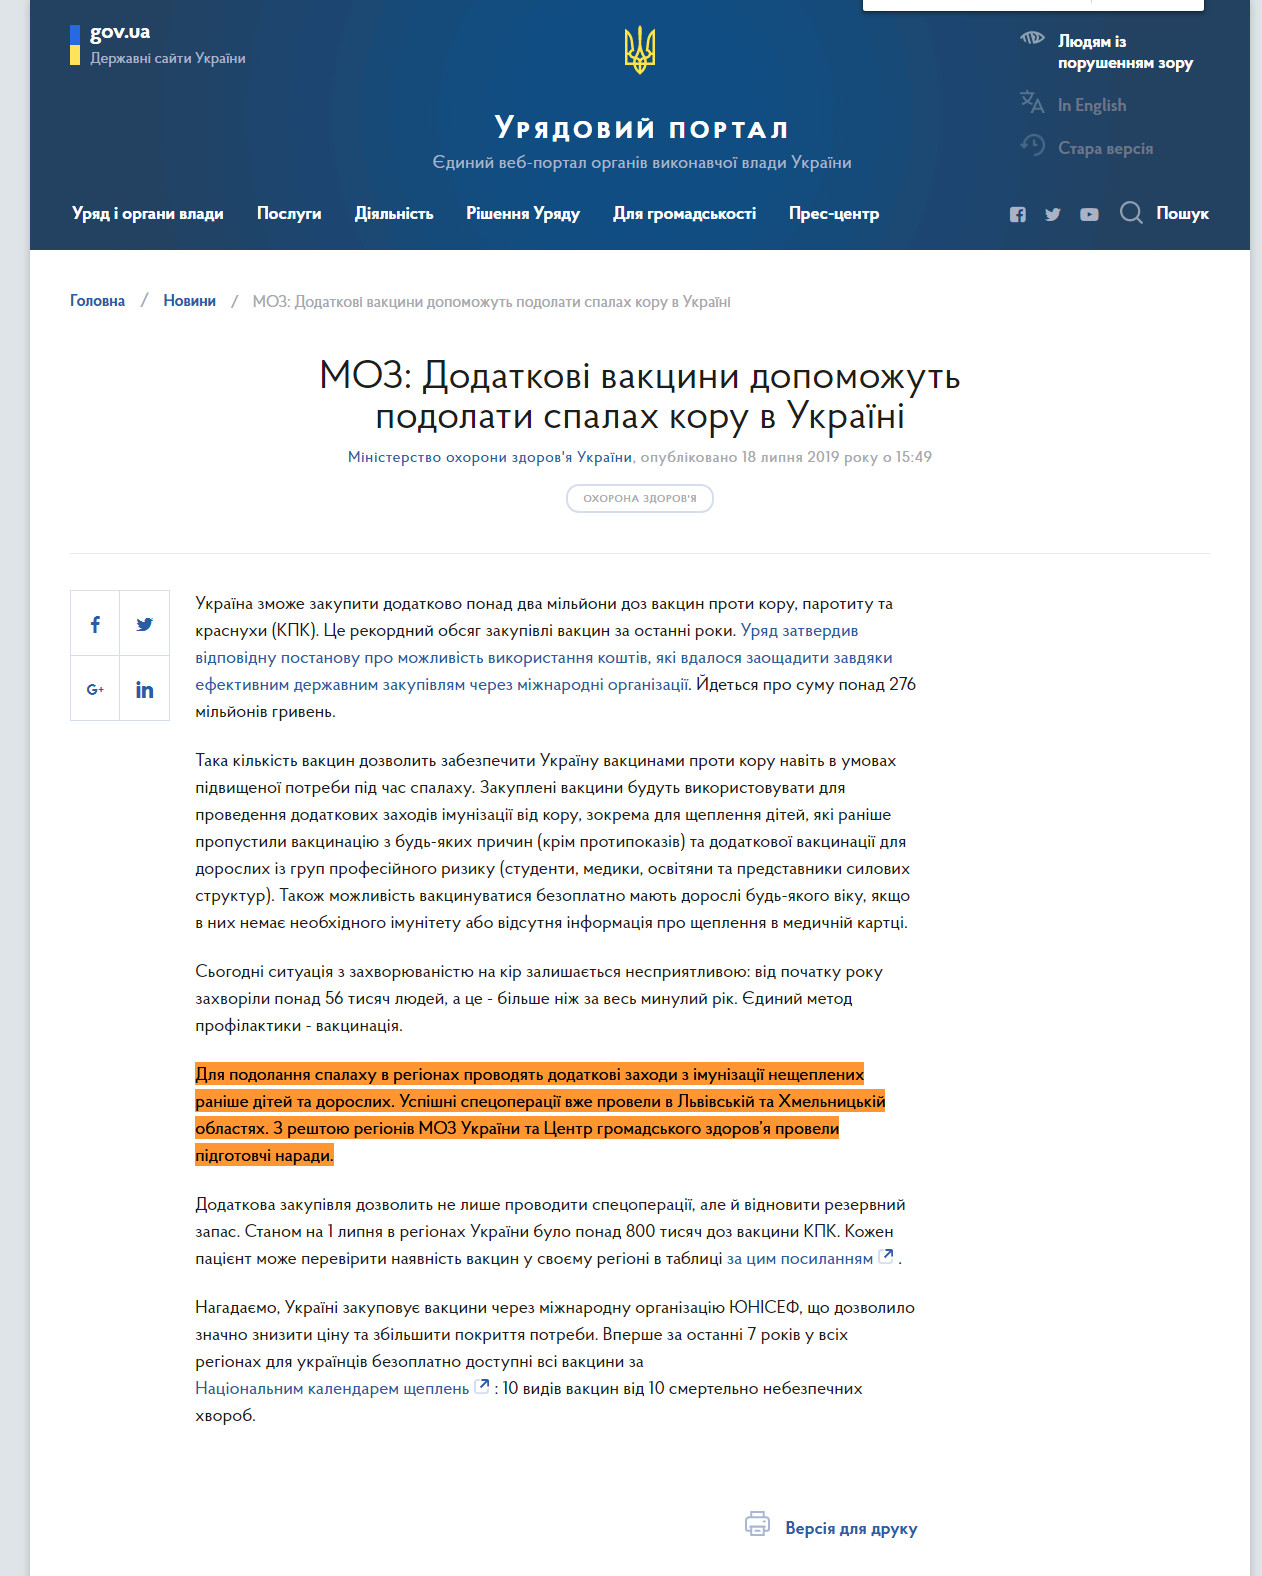 https://www.kmu.gov.ua/ua/news/moz-dodatkovi-vakcini-dopomozhut-podolati-spalah-koru-v-ukrayini